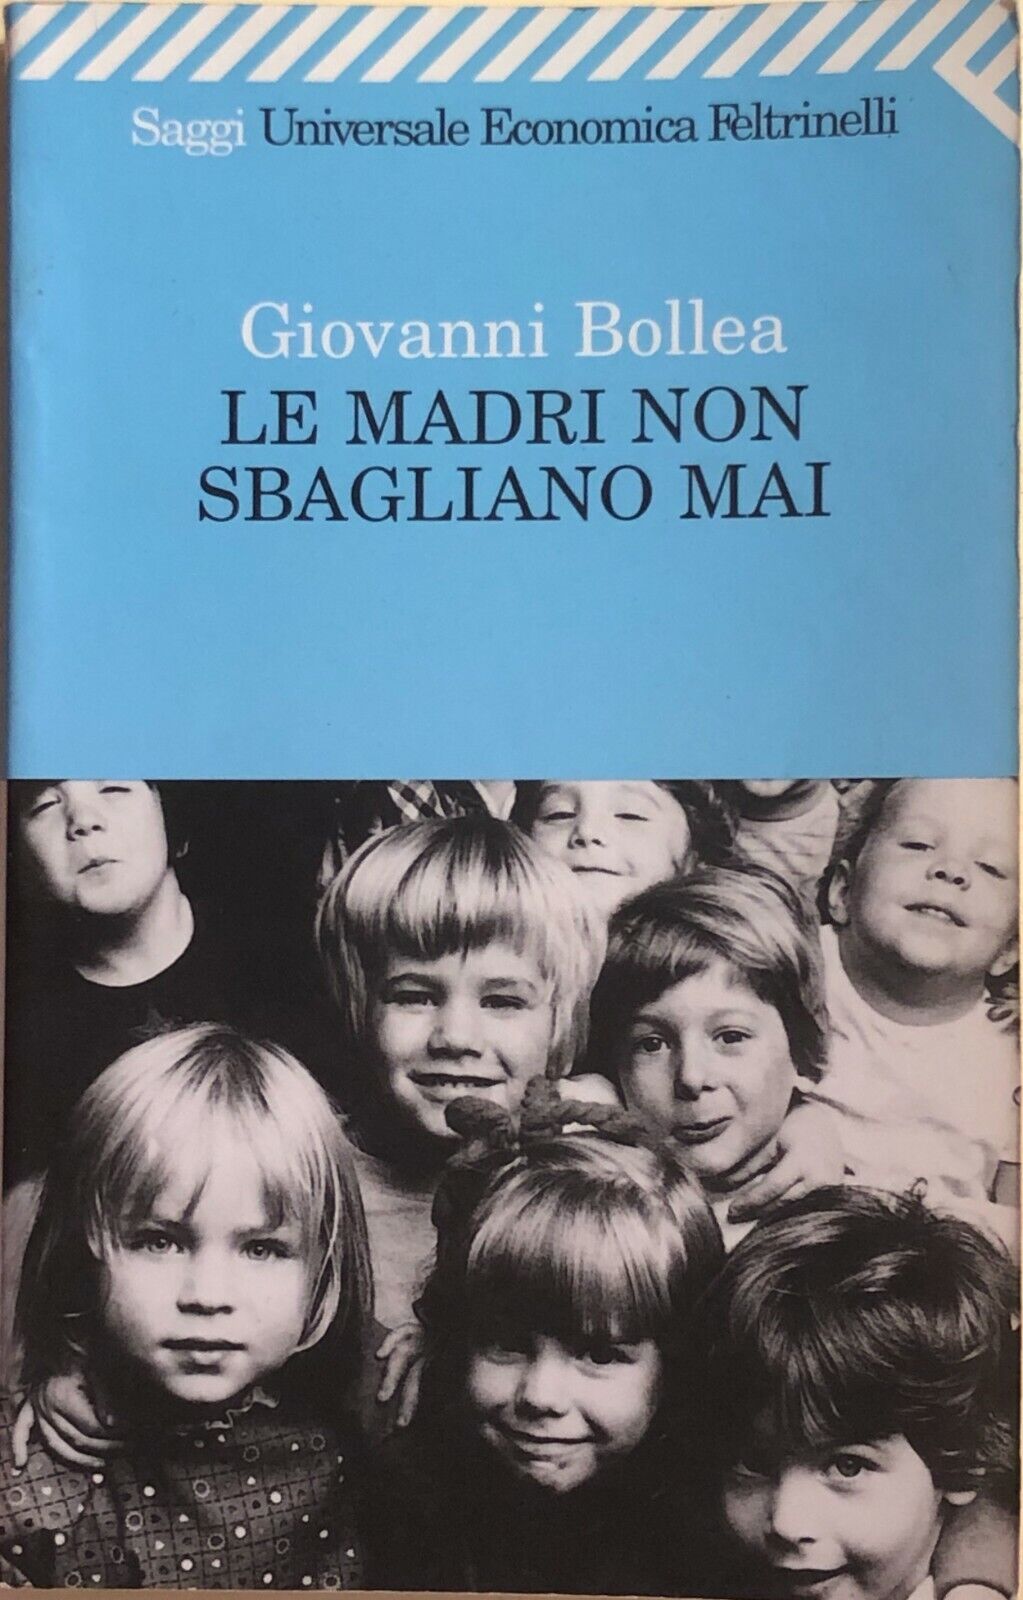 Le madri non sbagliano mai di Giovanni Bollea, 1999, Feltrinelli